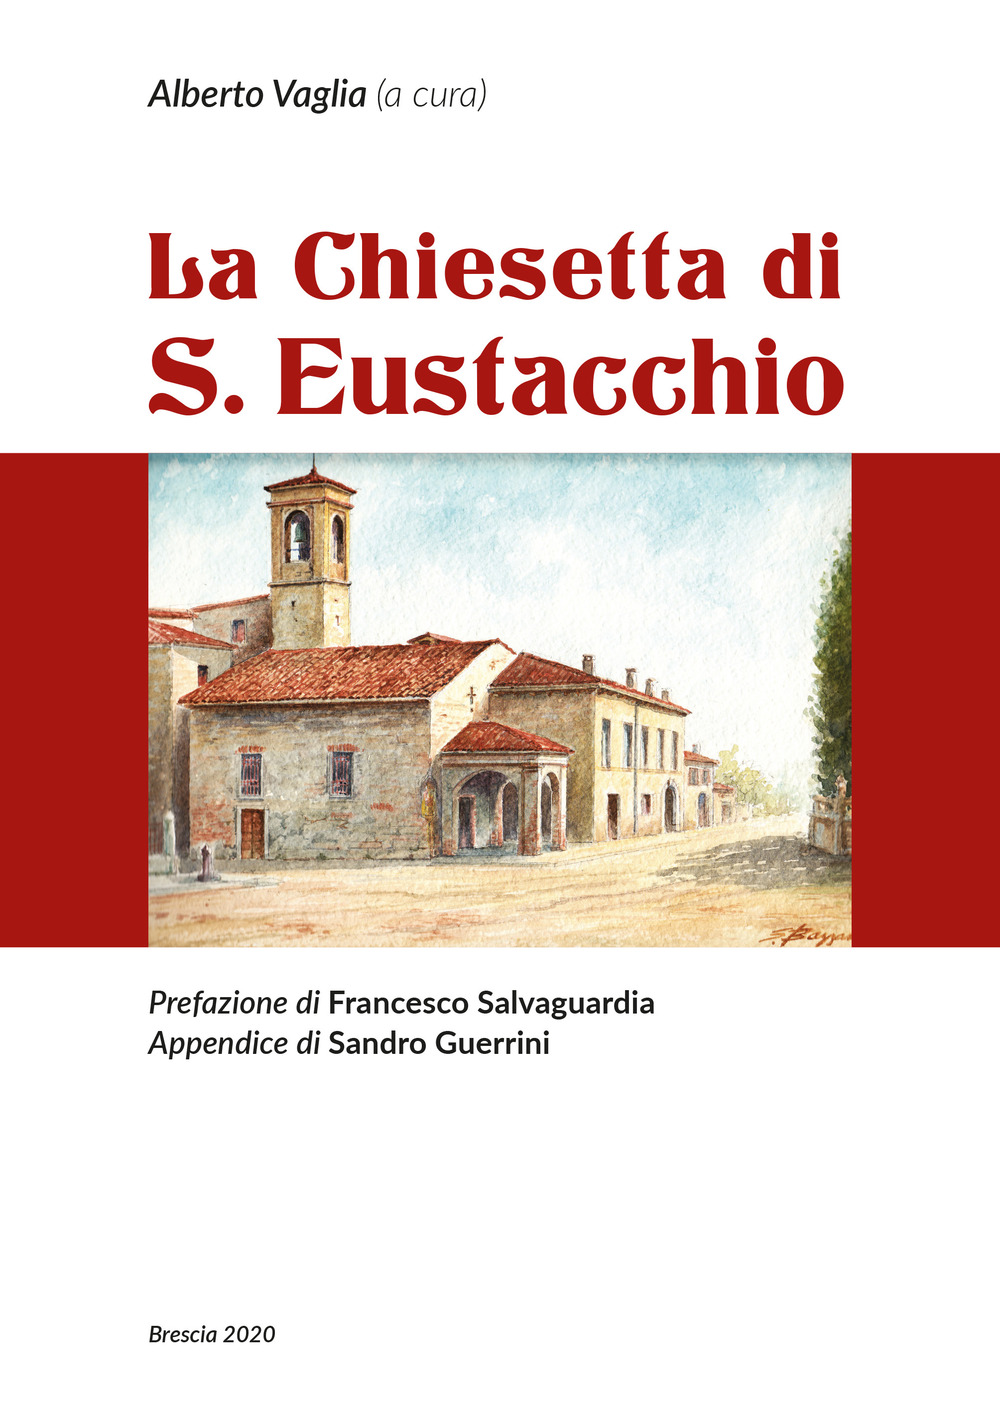 La chiesetta di S. Eustacchio